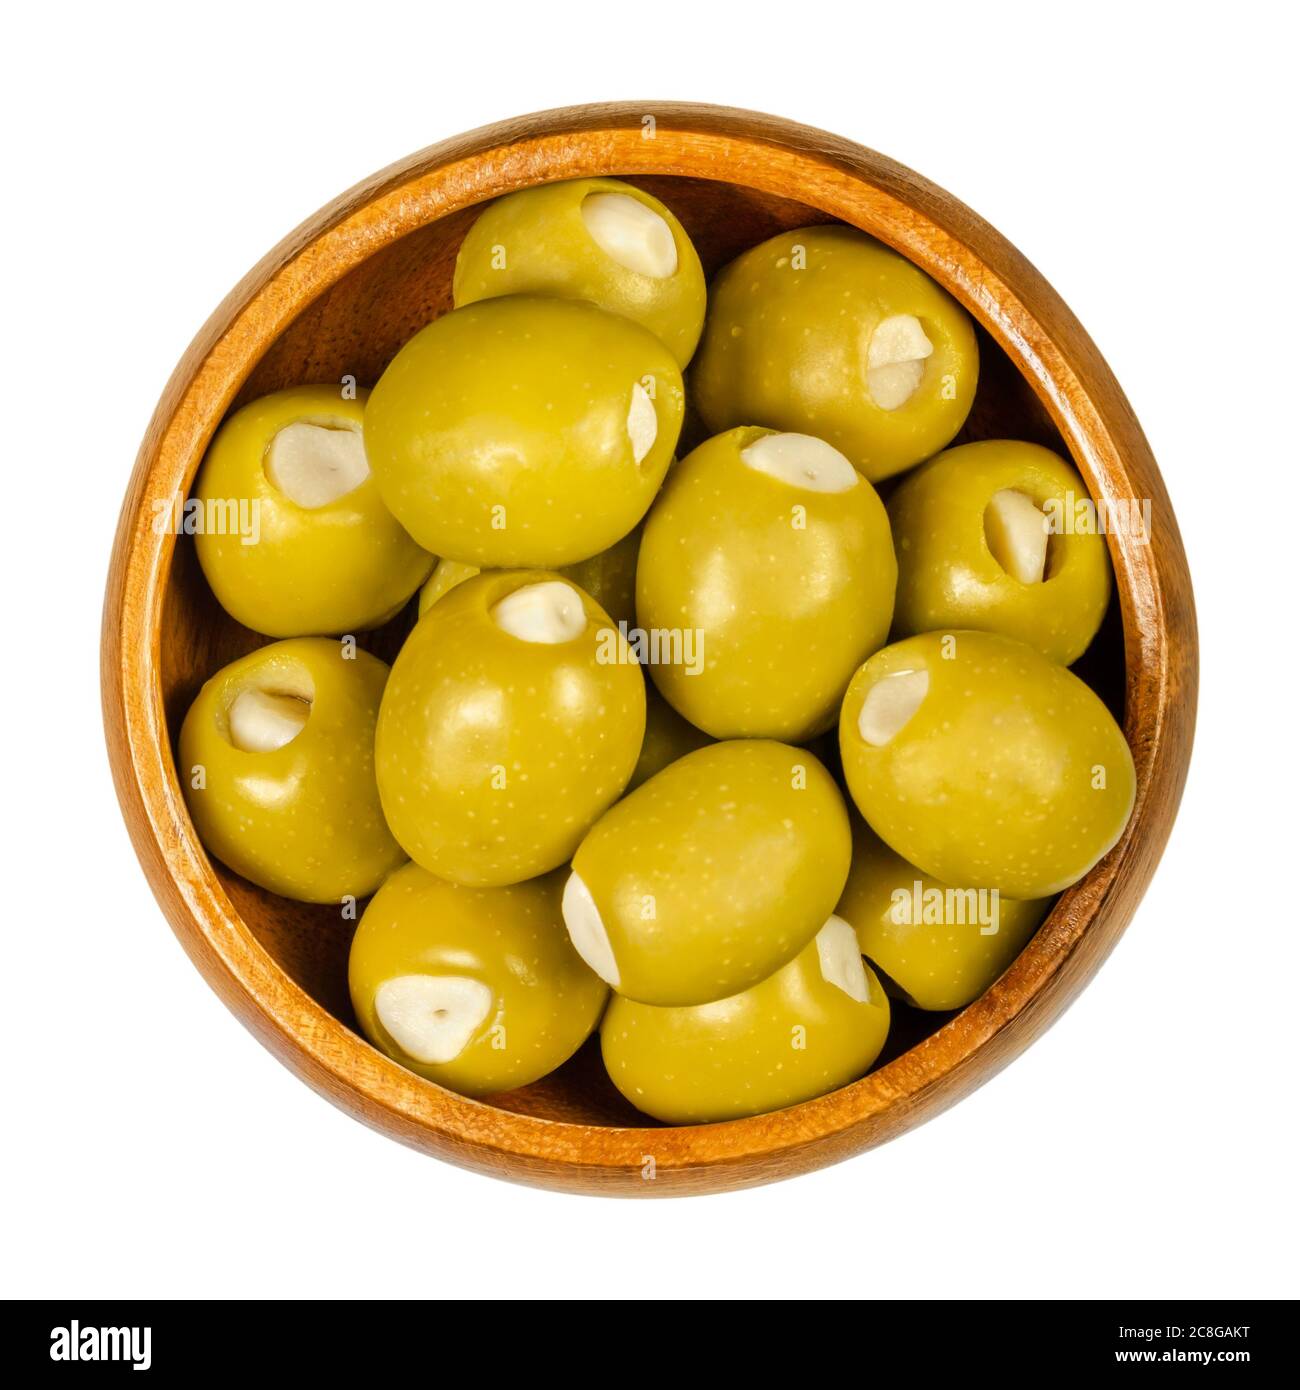 Olives vertes farcies aux gousses d'ail dans un bol en bois. Grandes olives, fruits d'Olea europaea, fourrées à la main de morceaux d'ail marinés. Gros plan. Banque D'Images